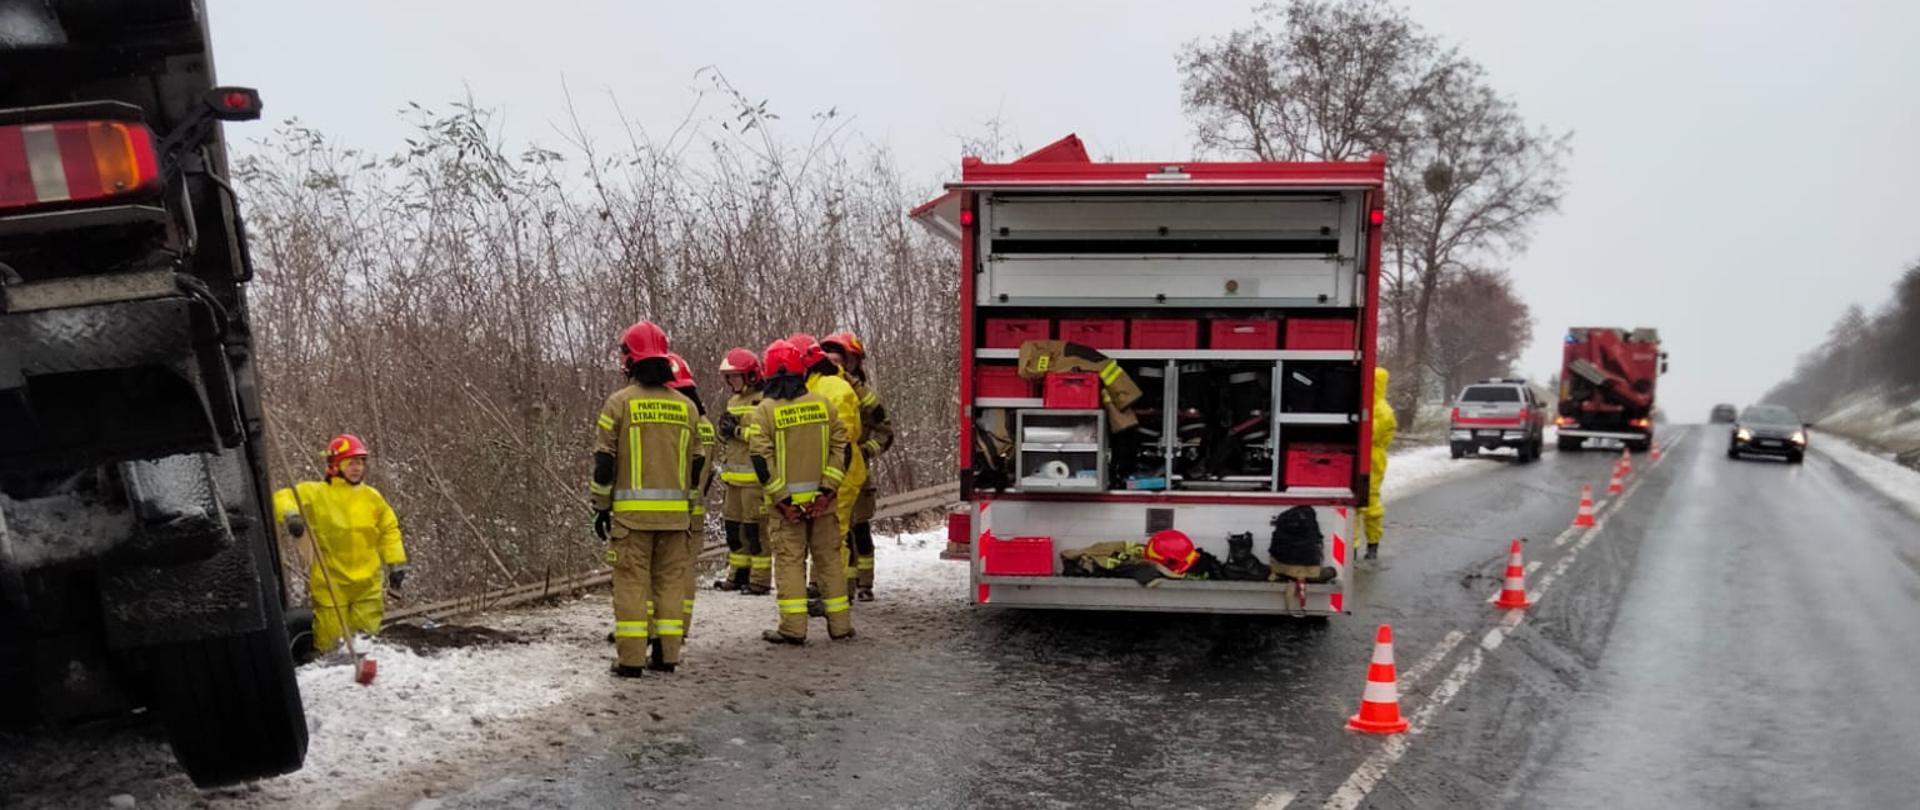 Zdjęcie przedstawia samochody strażackie stojące na drodze, na której miał miejsce wcześniej wypadek. Na zdjęciu widać częściowo tył naczepy samochodu ciężarowego. Strażacy stoją przy samochodzie strażackim. Jeden pas drogi wygrodzony pachołkami. 